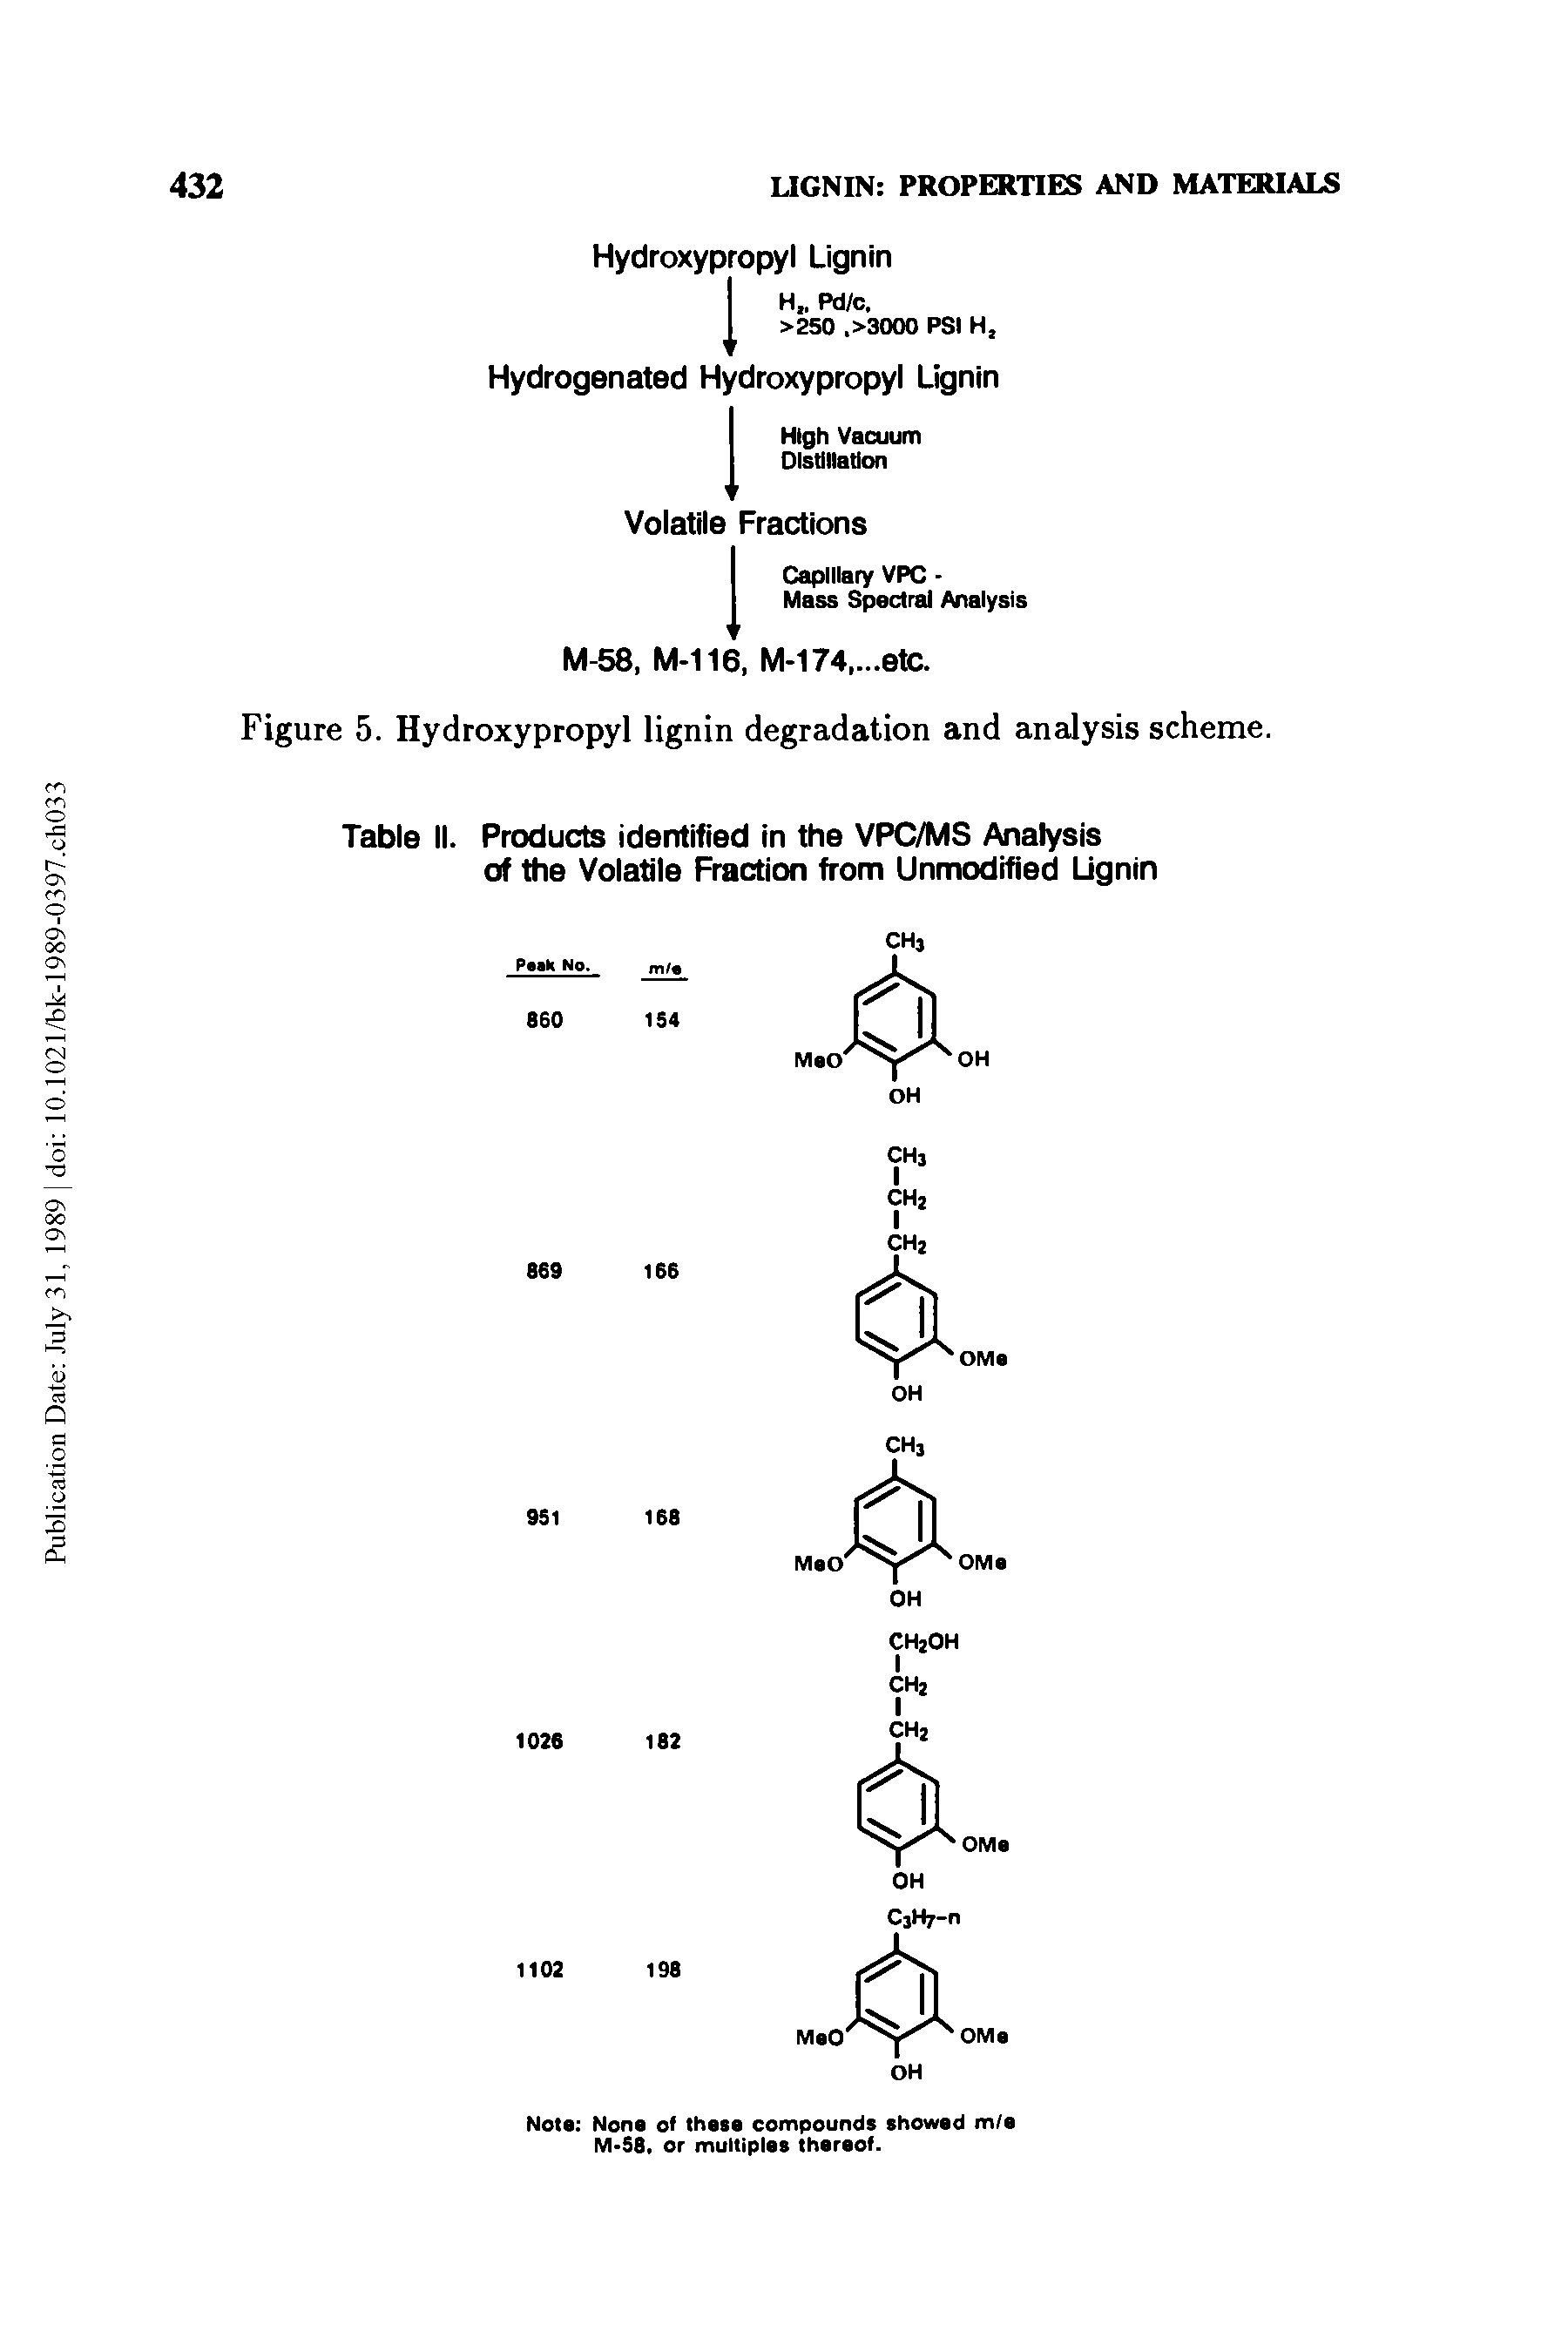 Figure 5. Hydroxypropyl lignin degradation and analysis scheme.